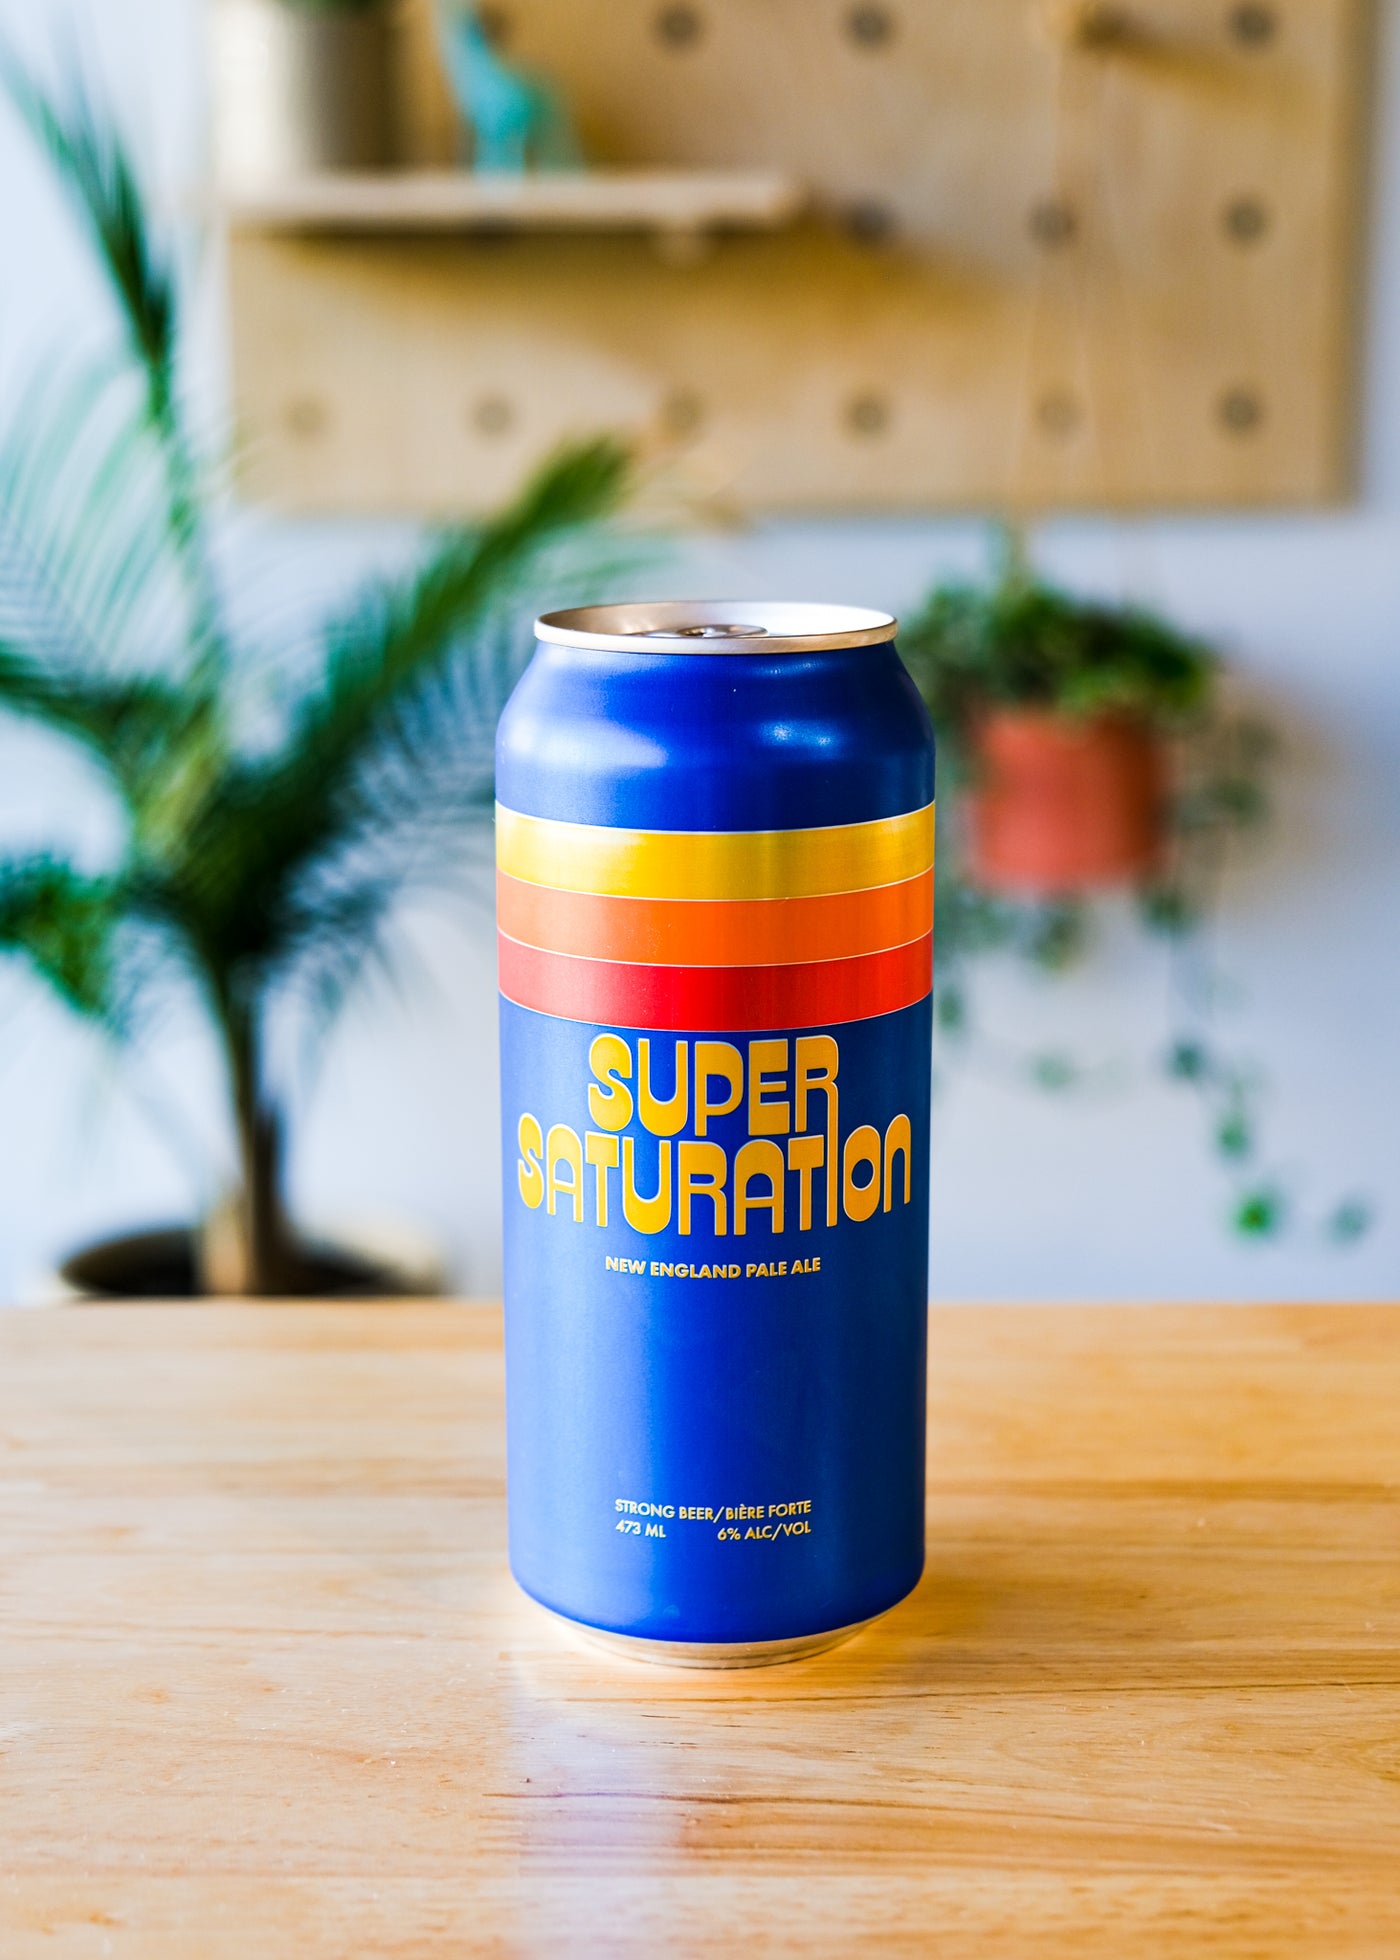 SUPER SATURATION | New England Pale Ale